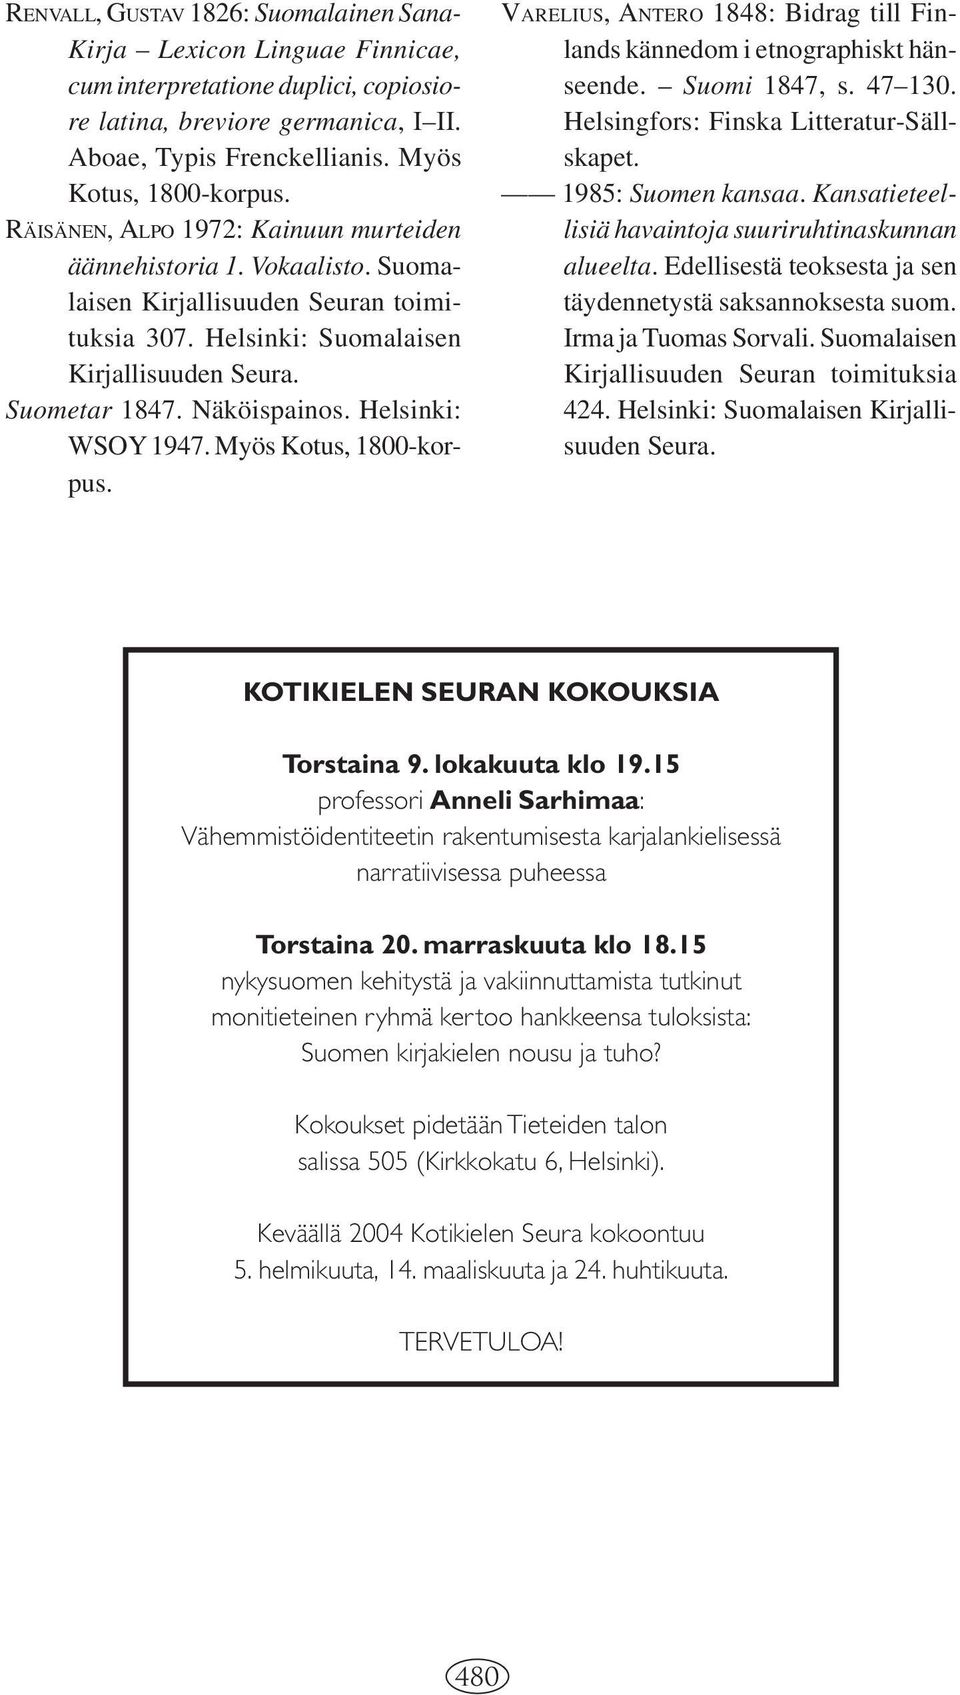 Helsinki: WSOY 1947. Myös Kotus, 1800-korpus. VARELIUS, ANTERO 1848: Bidrag till Finlands kännedom i etnographiskt hänseende. Suomi 1847, s. 47 130. Helsingfors: Finska Litteratur-Sällskapet.